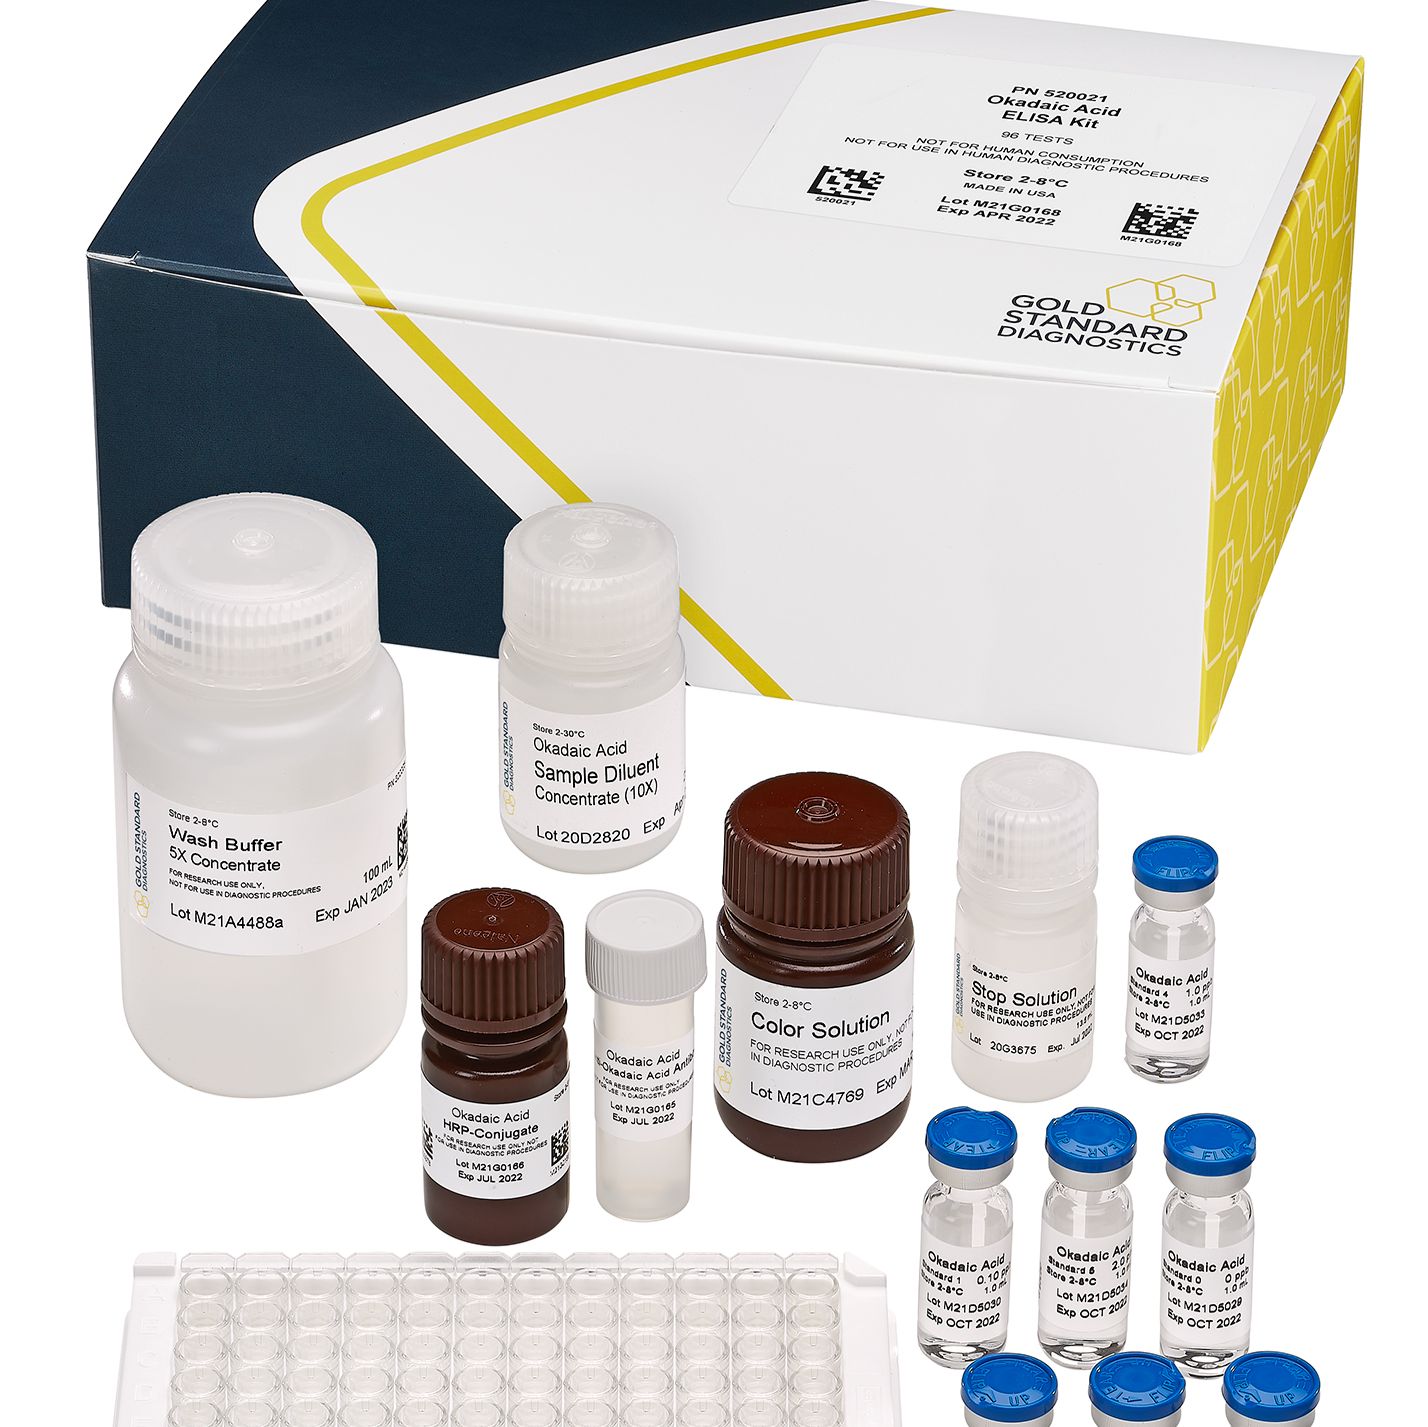 腹泻性贝类毒素(DSP)ELISA 检测试剂盒 